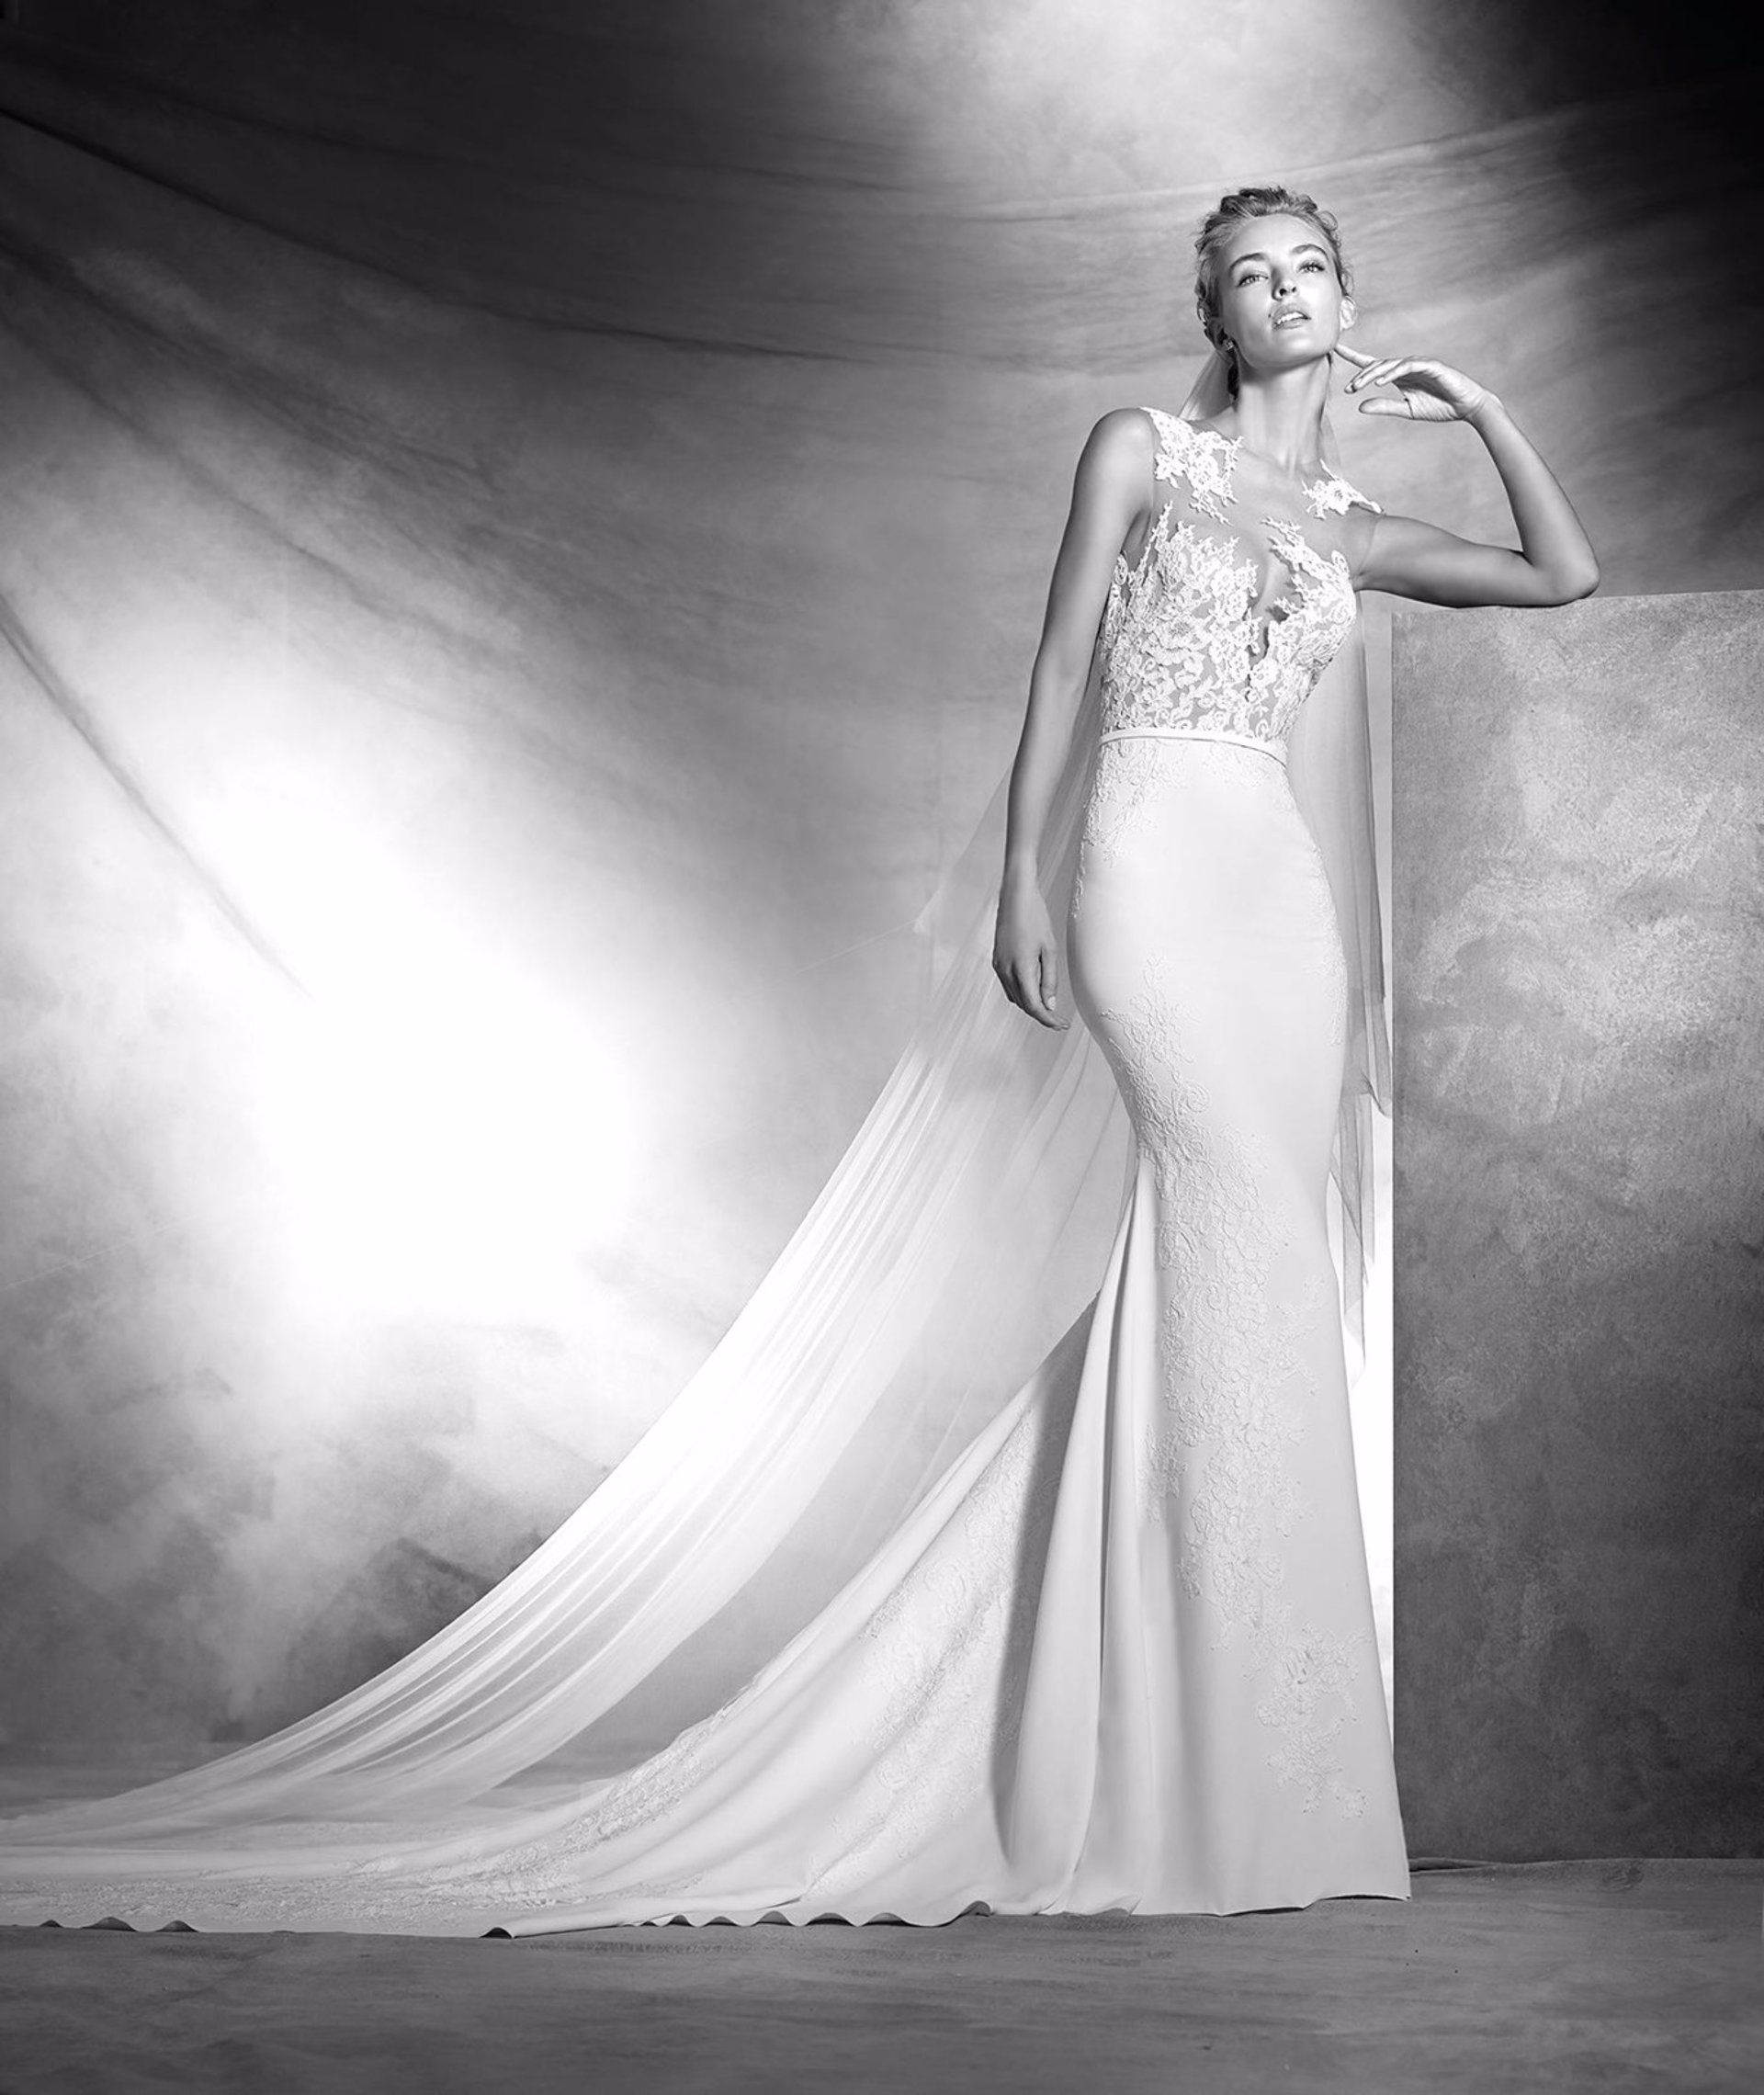 Pronovias, vestido modelo Vicenta de la colección 2016 realizado por Hervé Moreau. En crepe de tul y escote ilusión y falda corte sirena, ajustado a la cintura. Precioso modelo